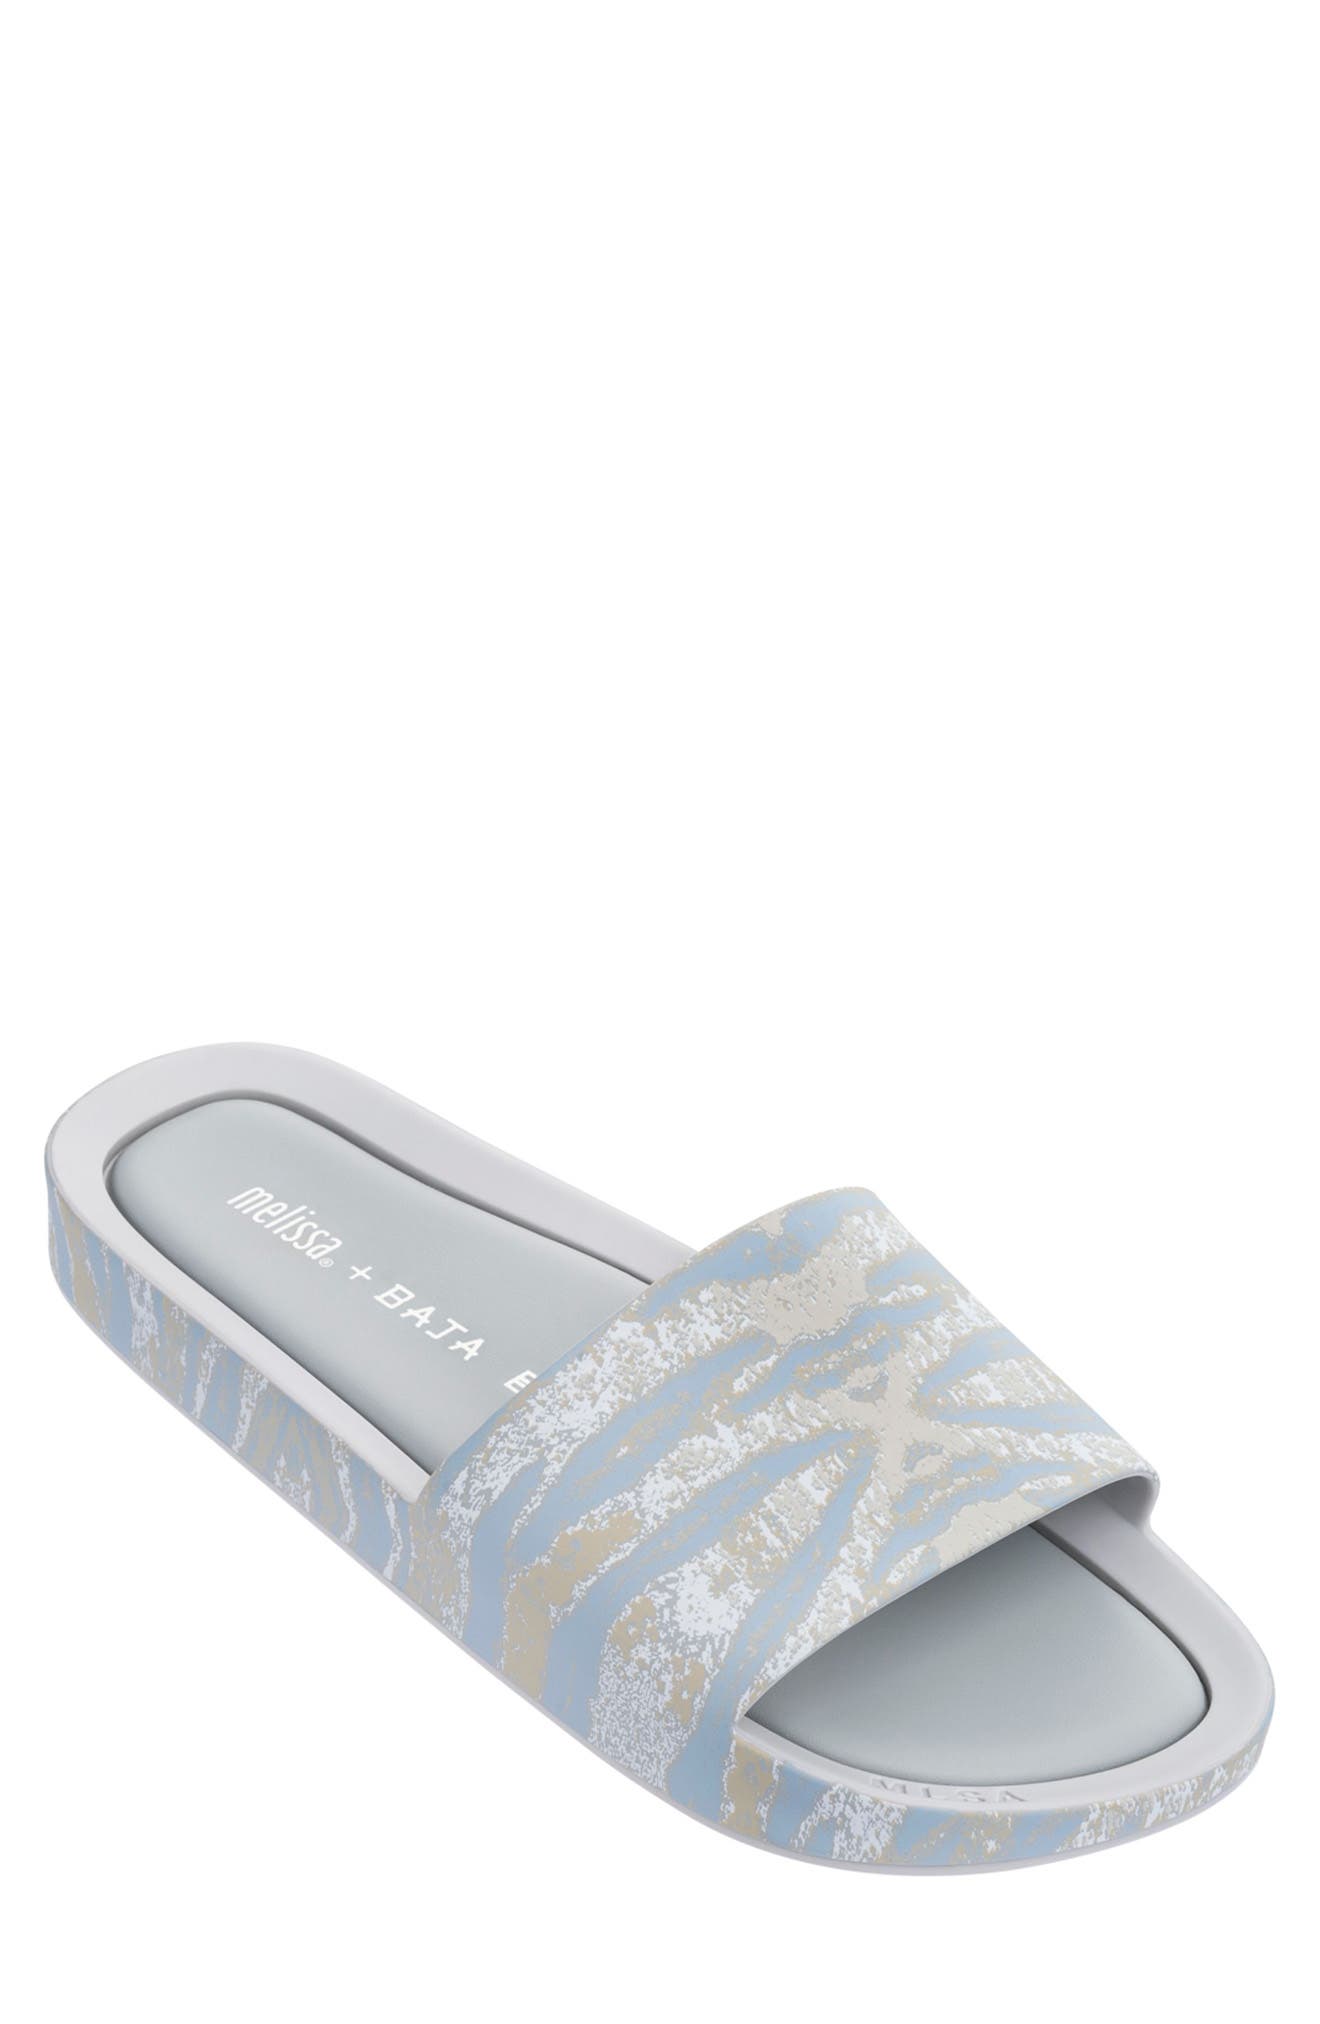 Melissa Beach Slide Sandal In Grey/ White